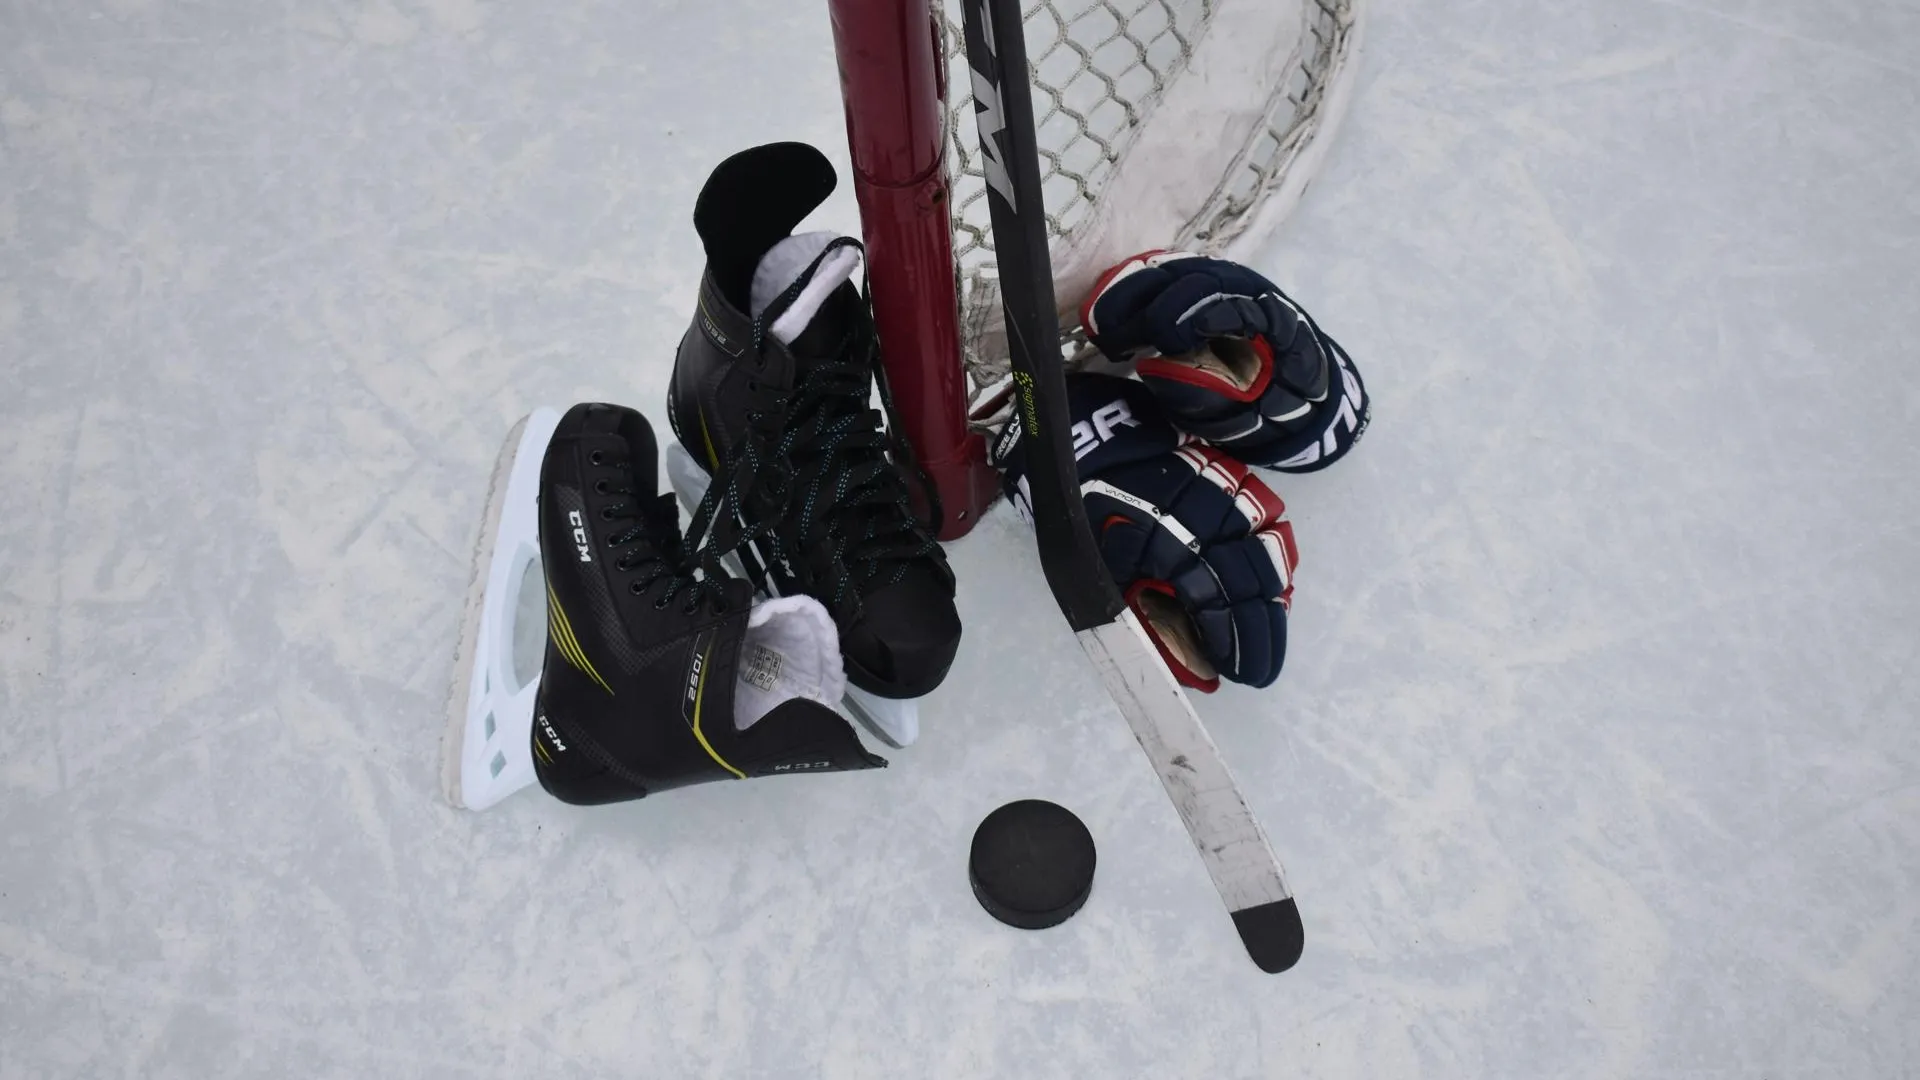 Межрегиональный турнир по хоккею среди женщин начался в Домодедове